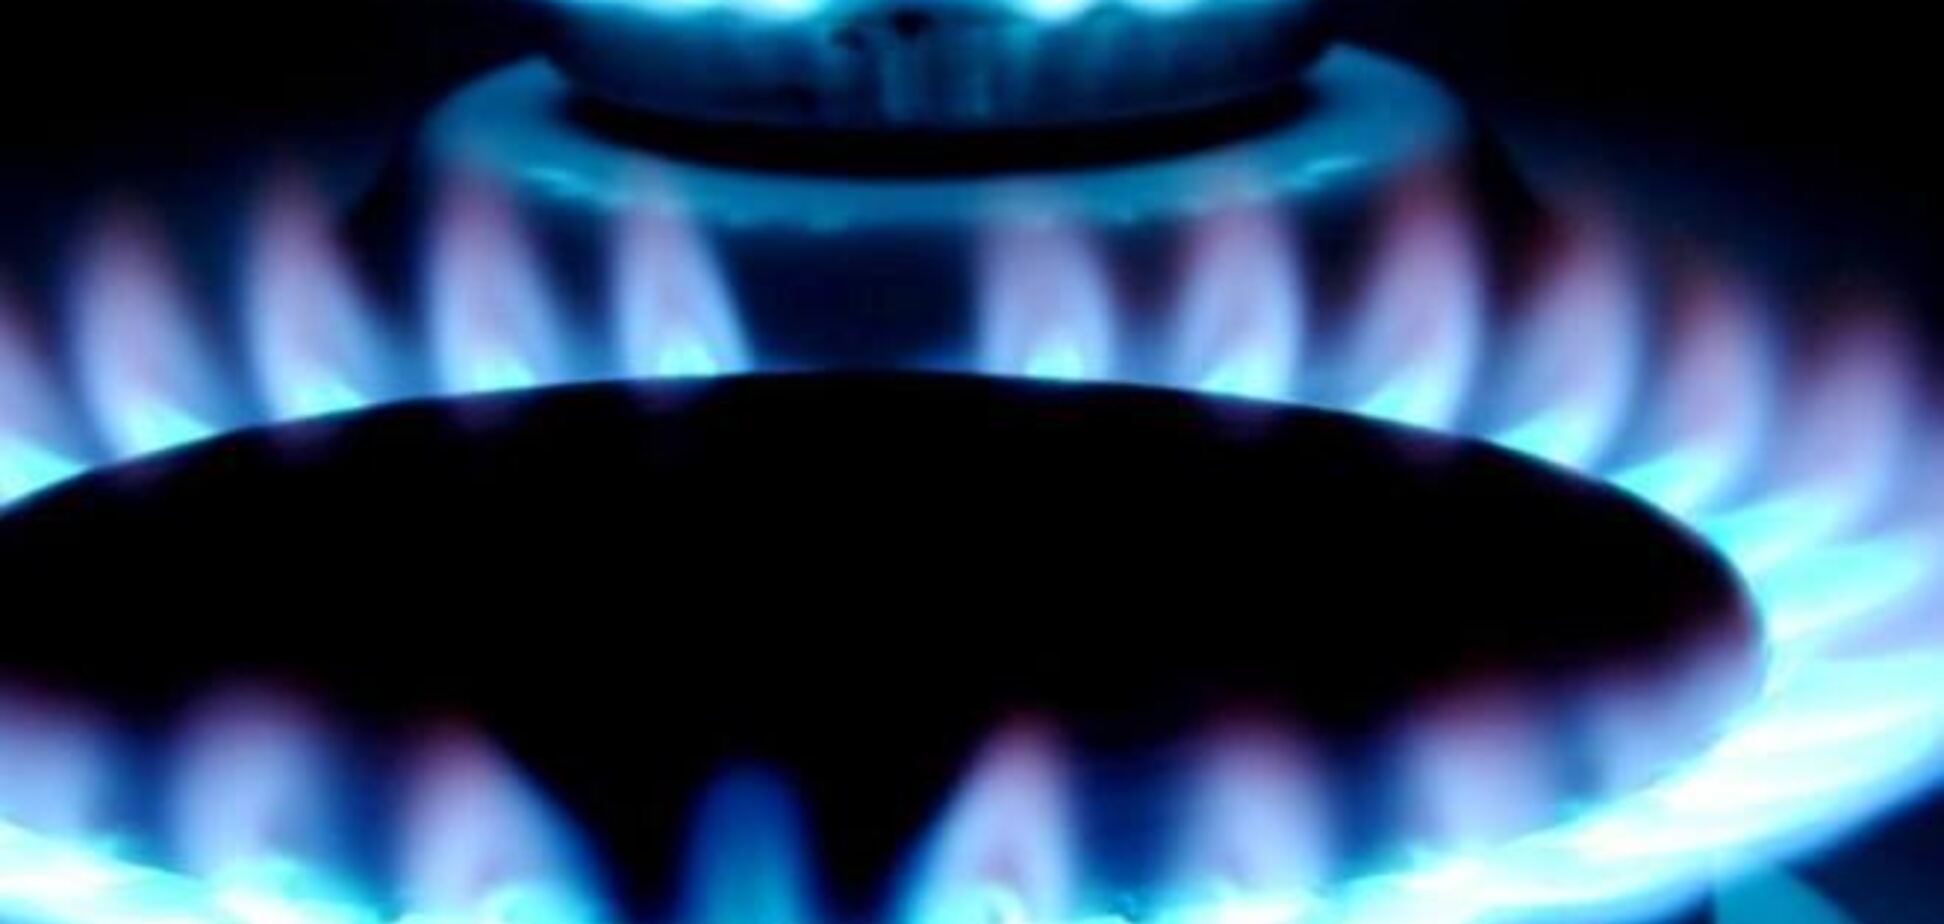 Россия снизила цену на газ для Украины до $268 за тыс. куб м